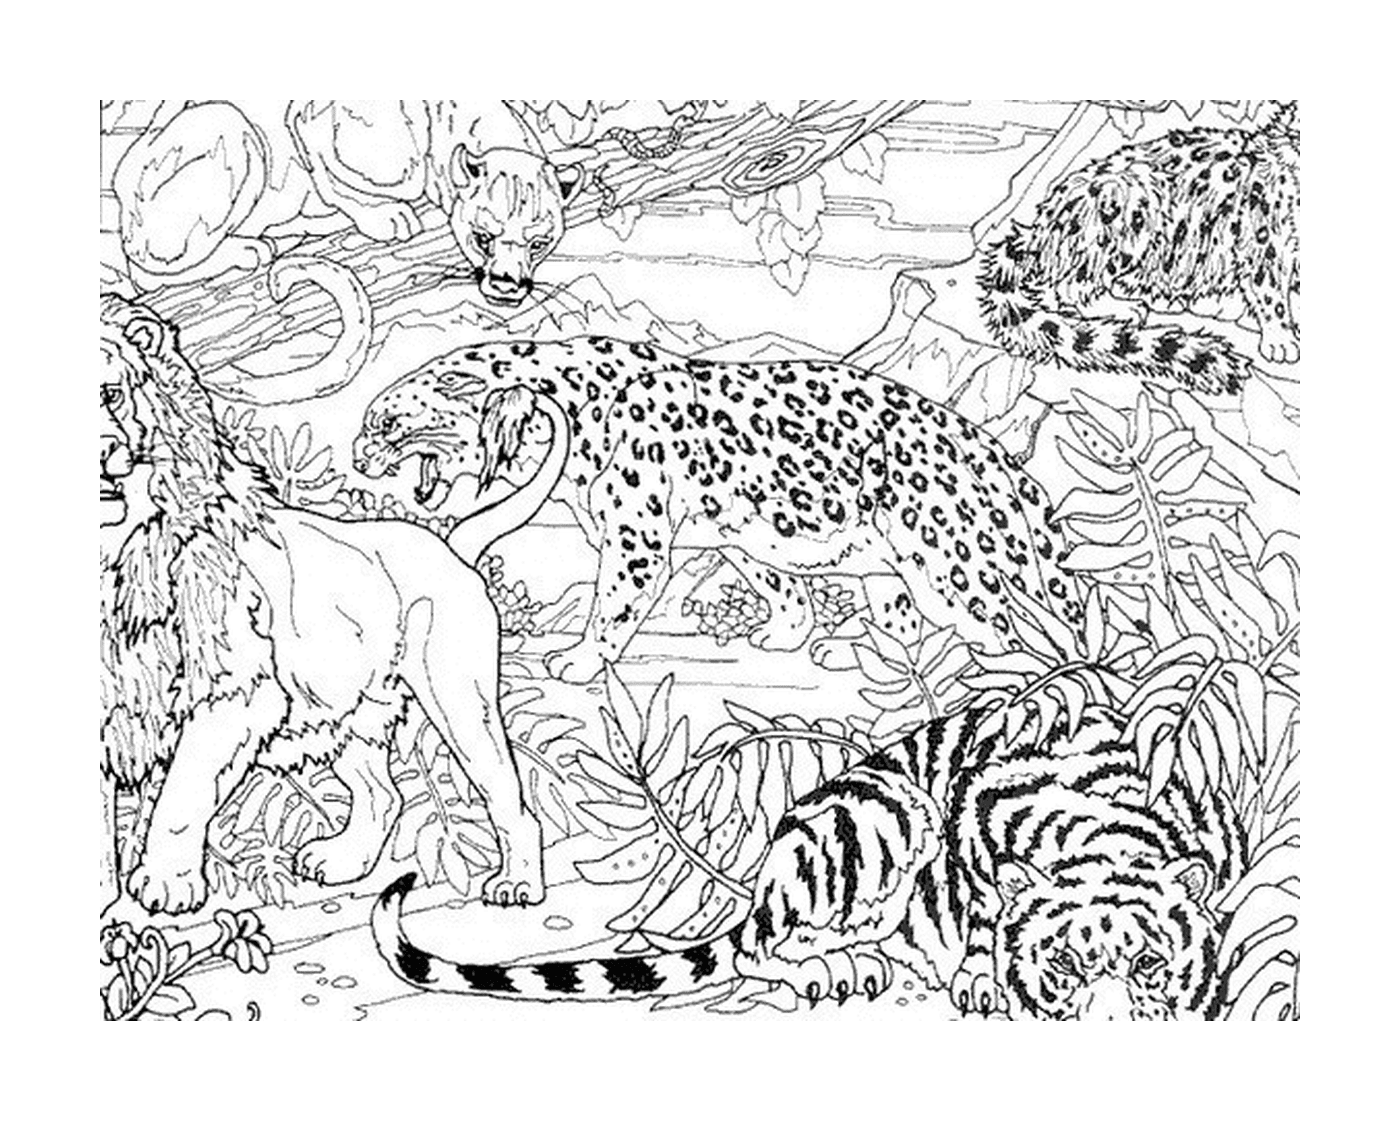  Un leopardo y dos tigres en la selva 